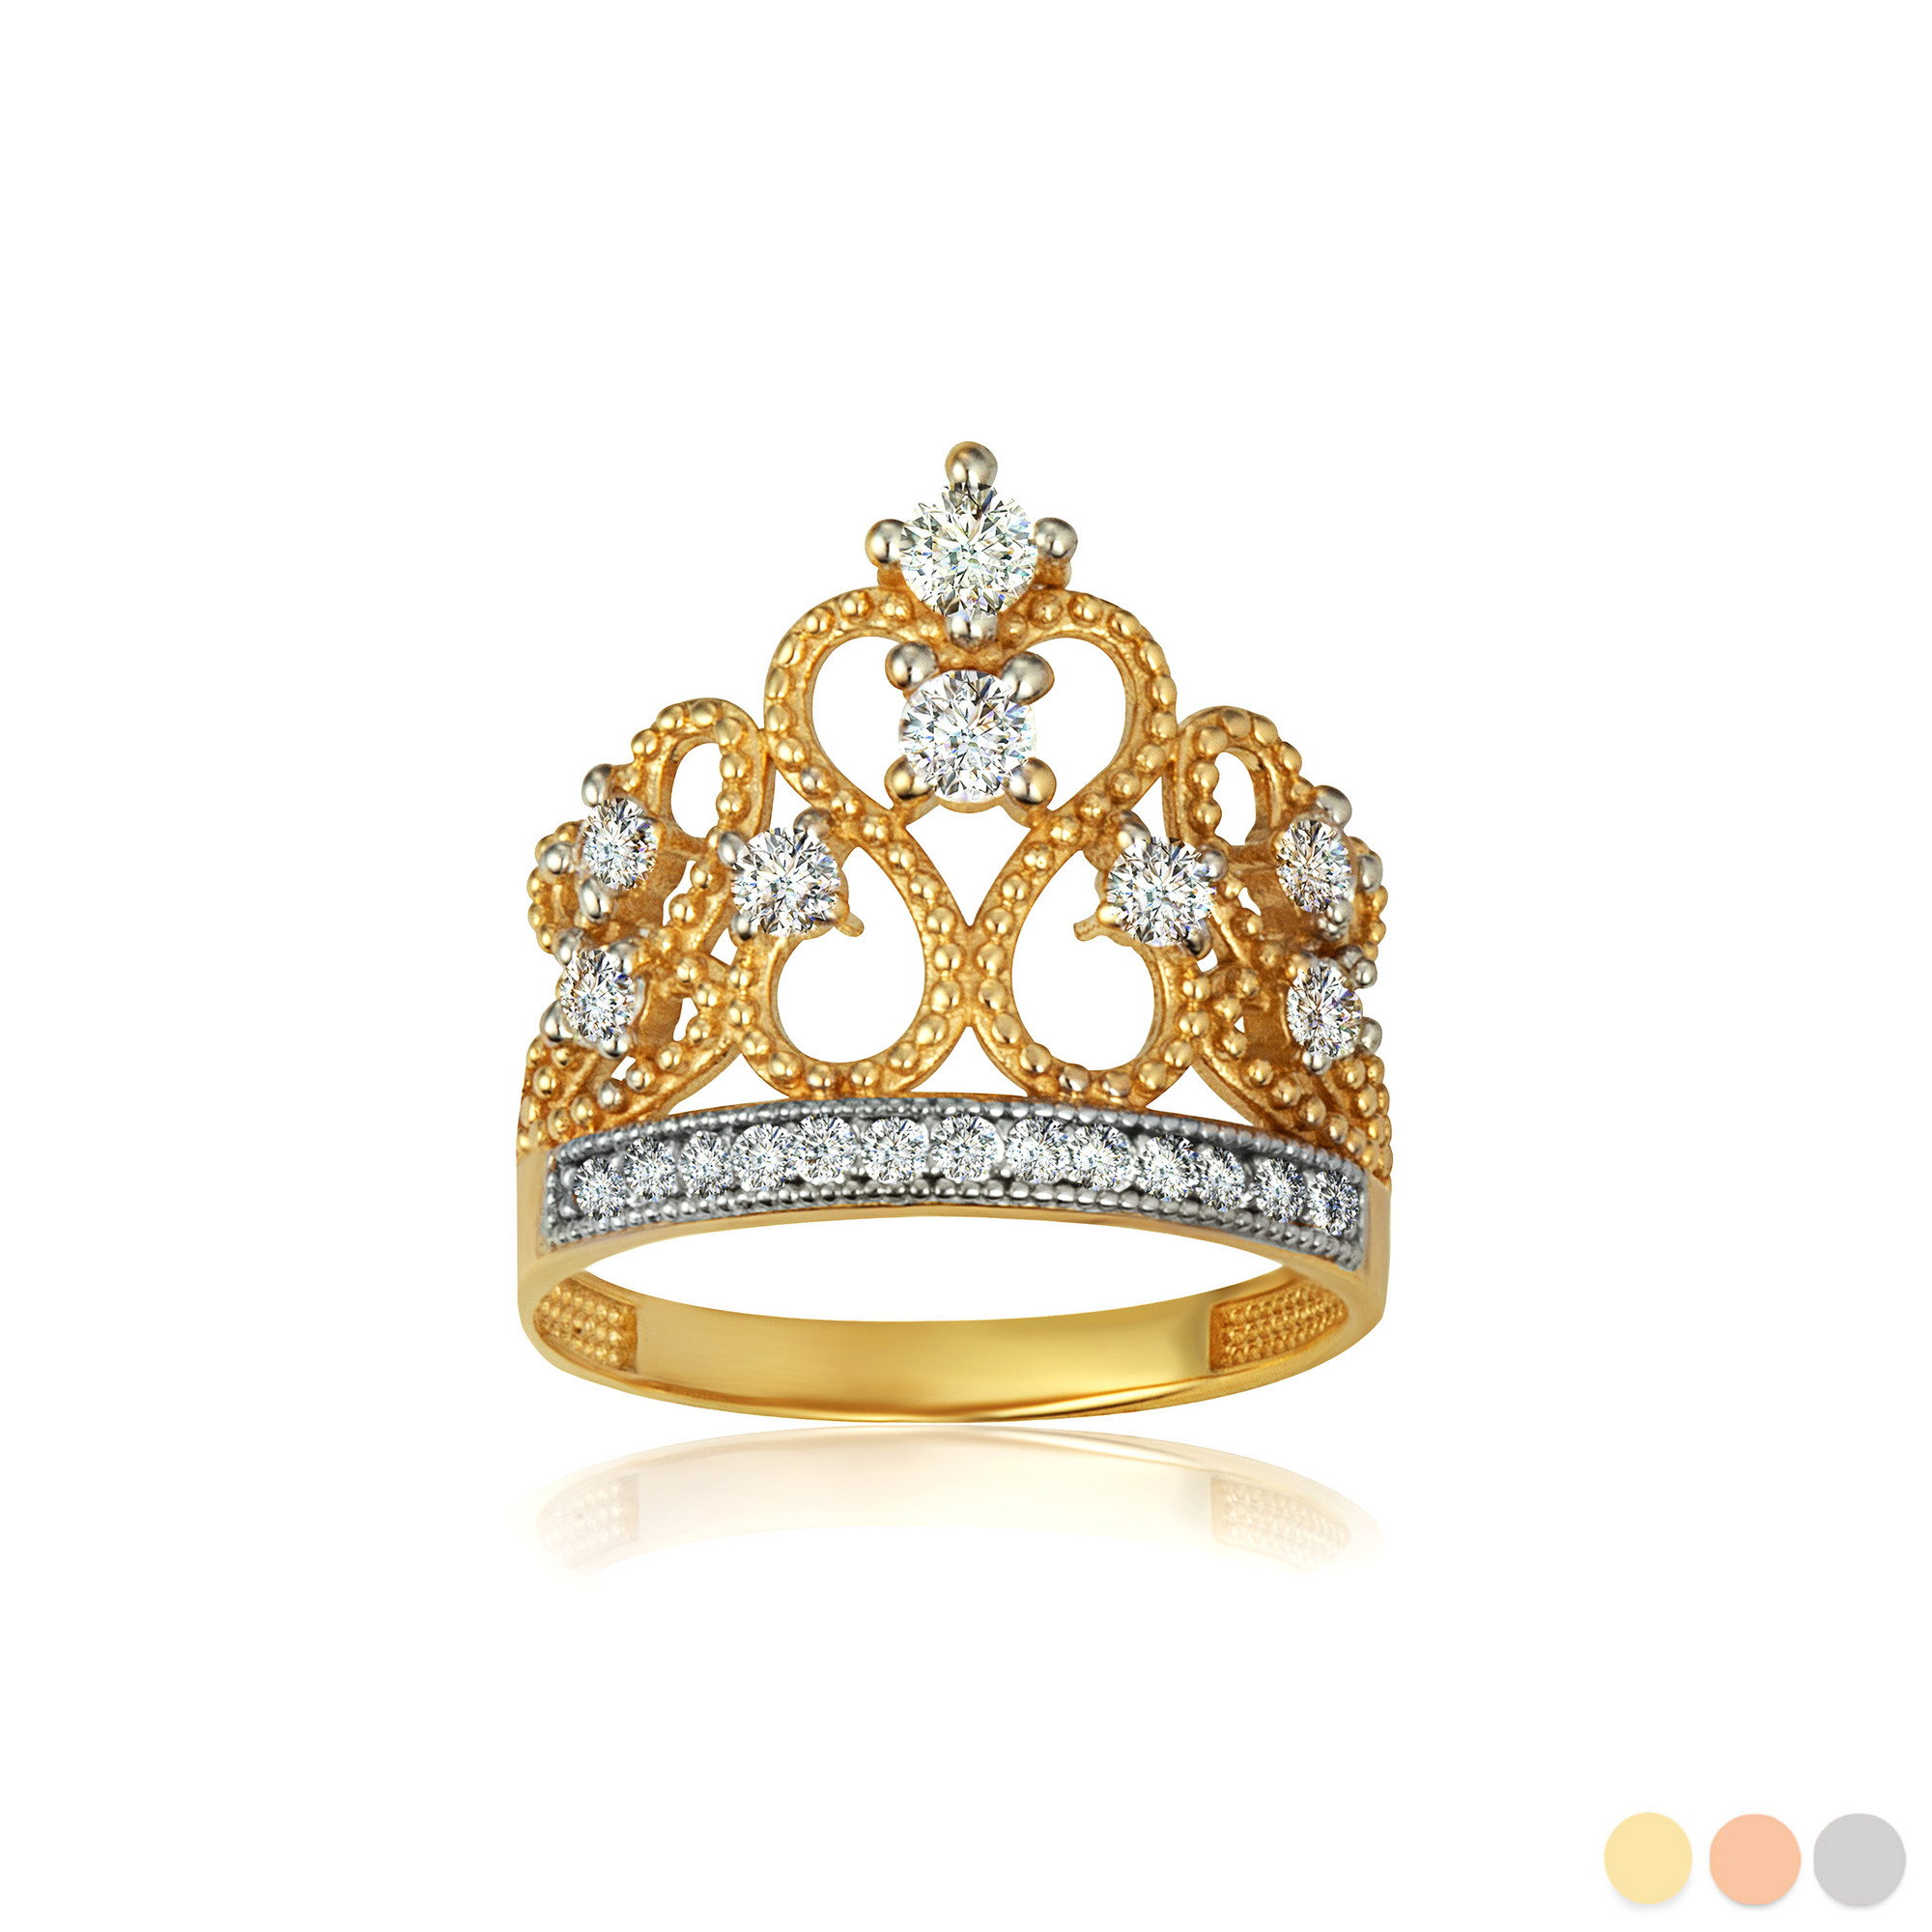 Buy Rose Gold Princess Tiara Crown Ring Online in India - Etsy